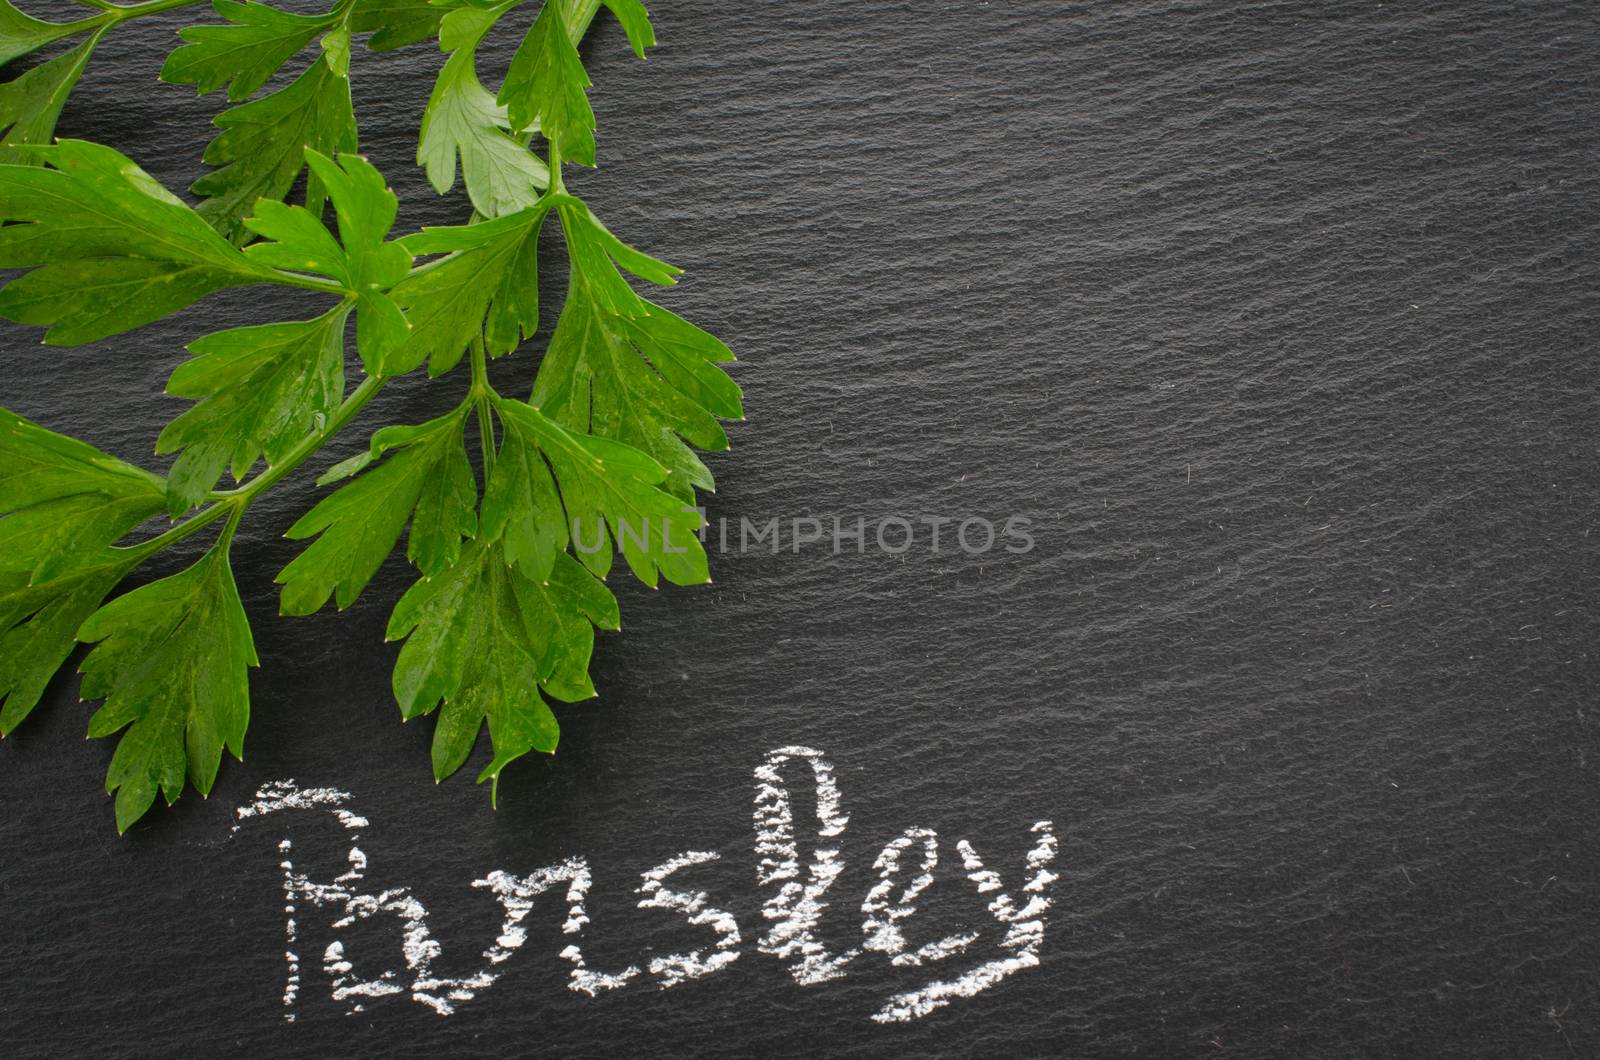 Fresh parsley sprigs on chalkboard. Twig of parsley